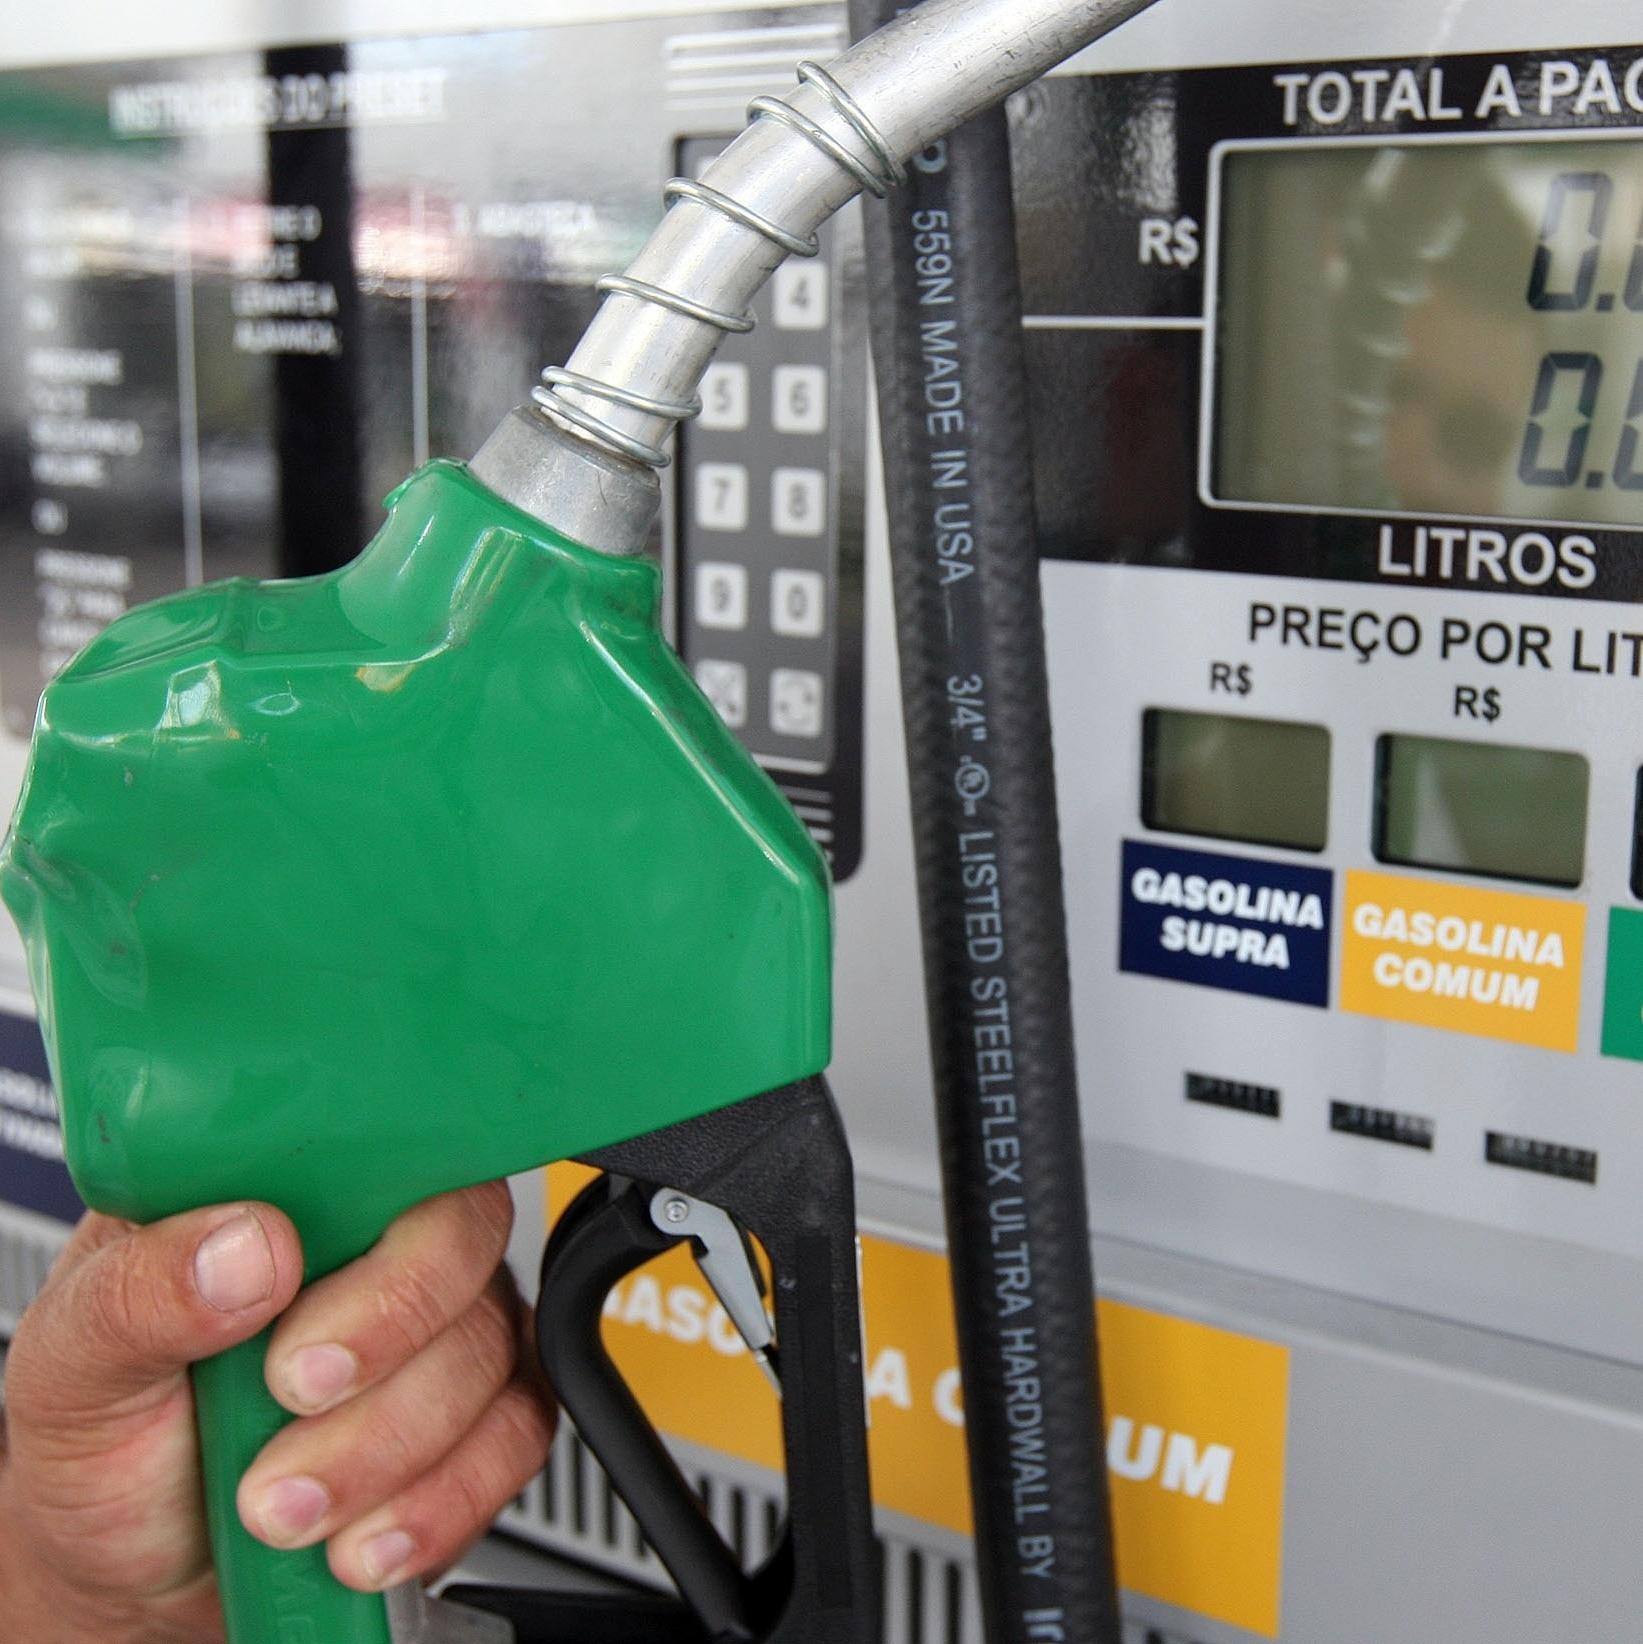 Diesel fica mais caro que gasolina pela primeira vez, segundo ANP